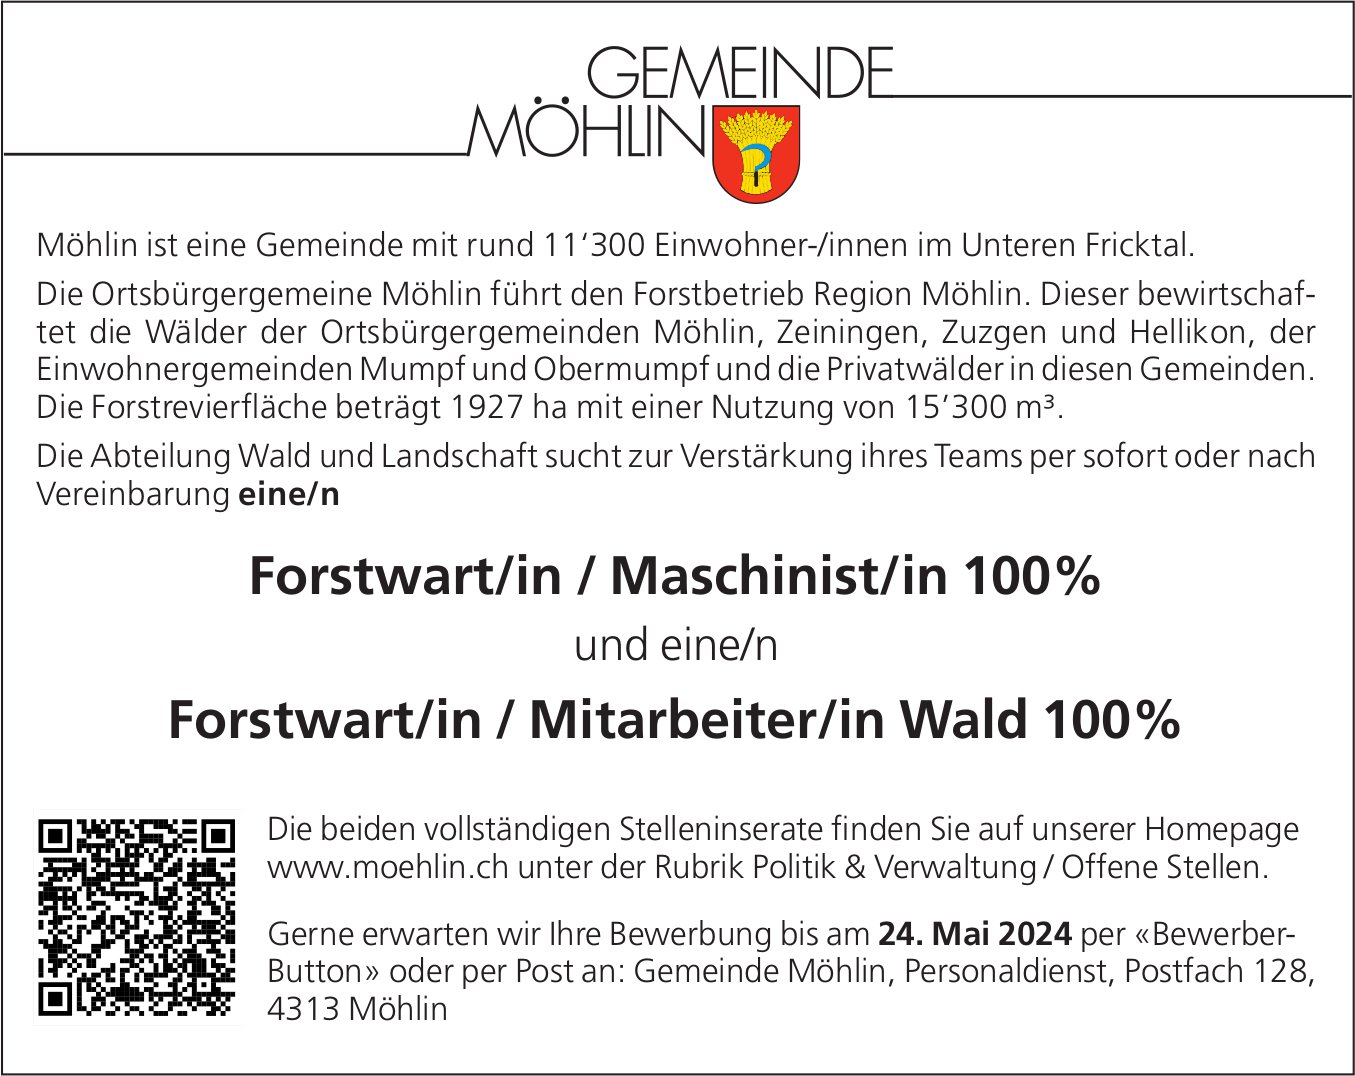 Forstwart/in / Maschinist/in und Forstwart/in / Mitarbeiter/in Wald je 100%, Gemeinde, Möhlin, gesucht